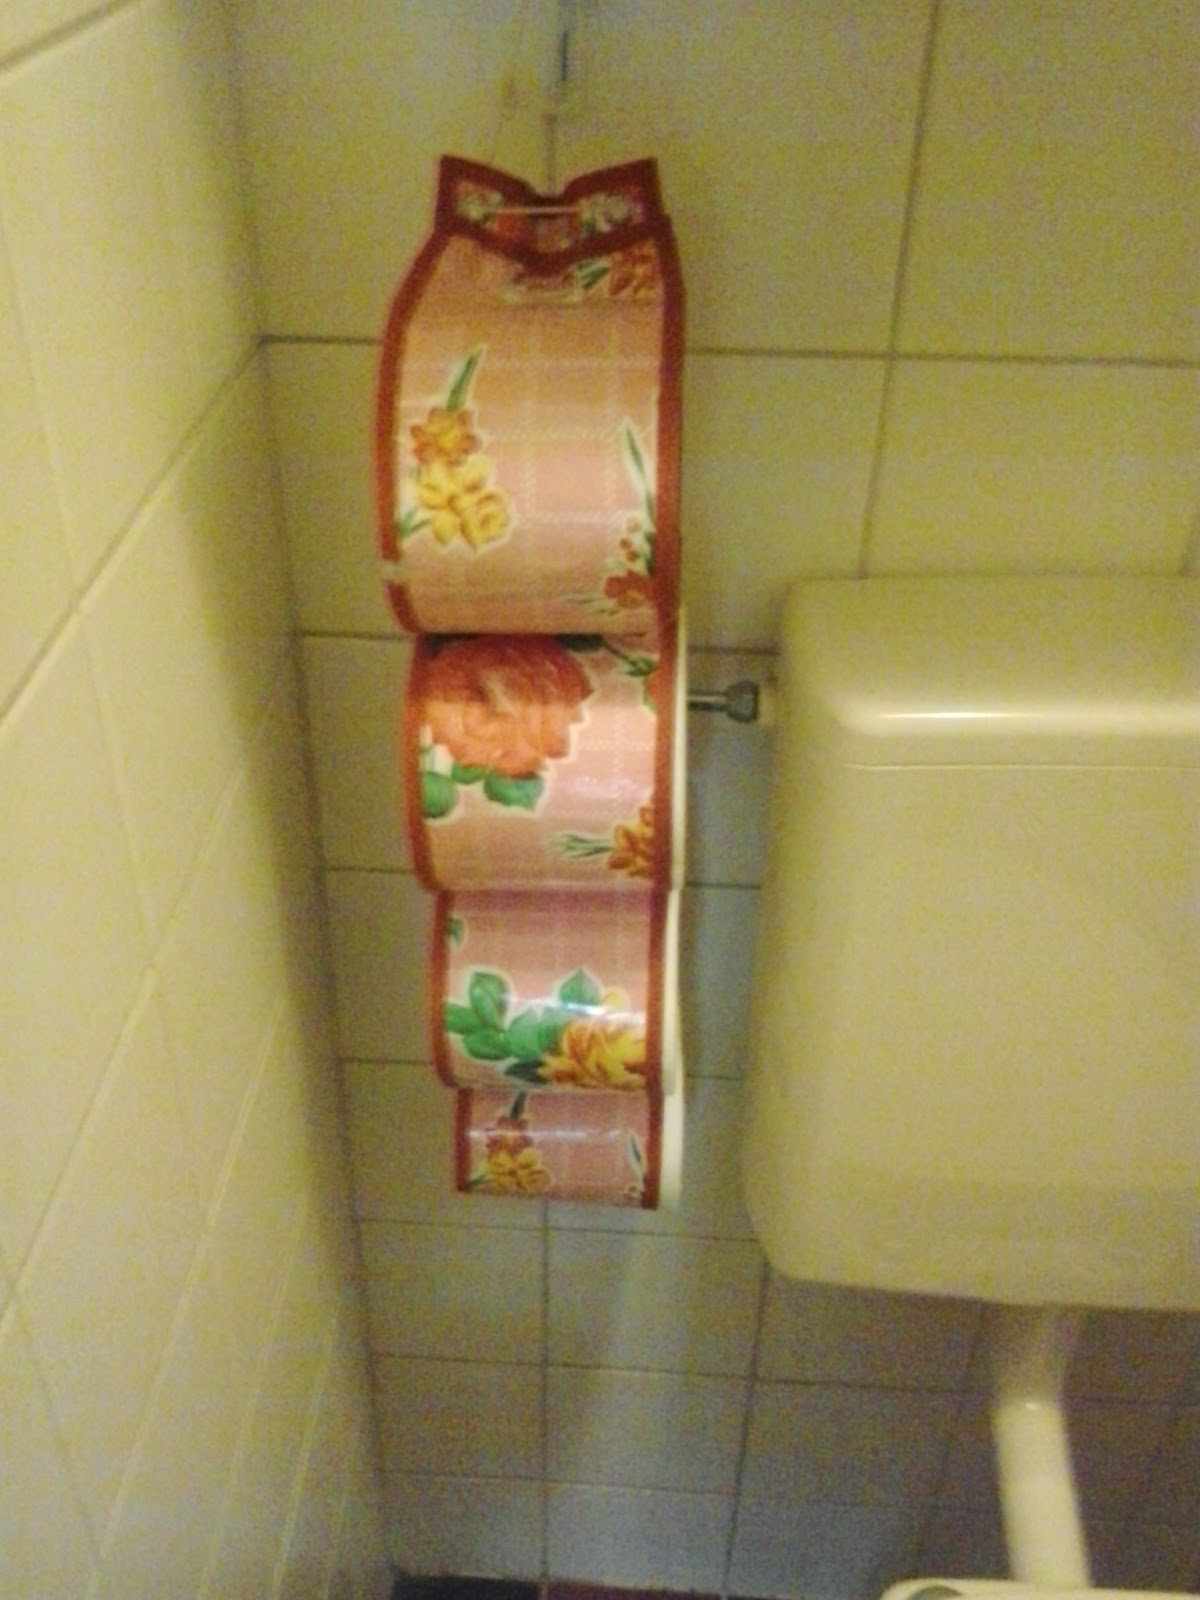 toilet paper roll holder